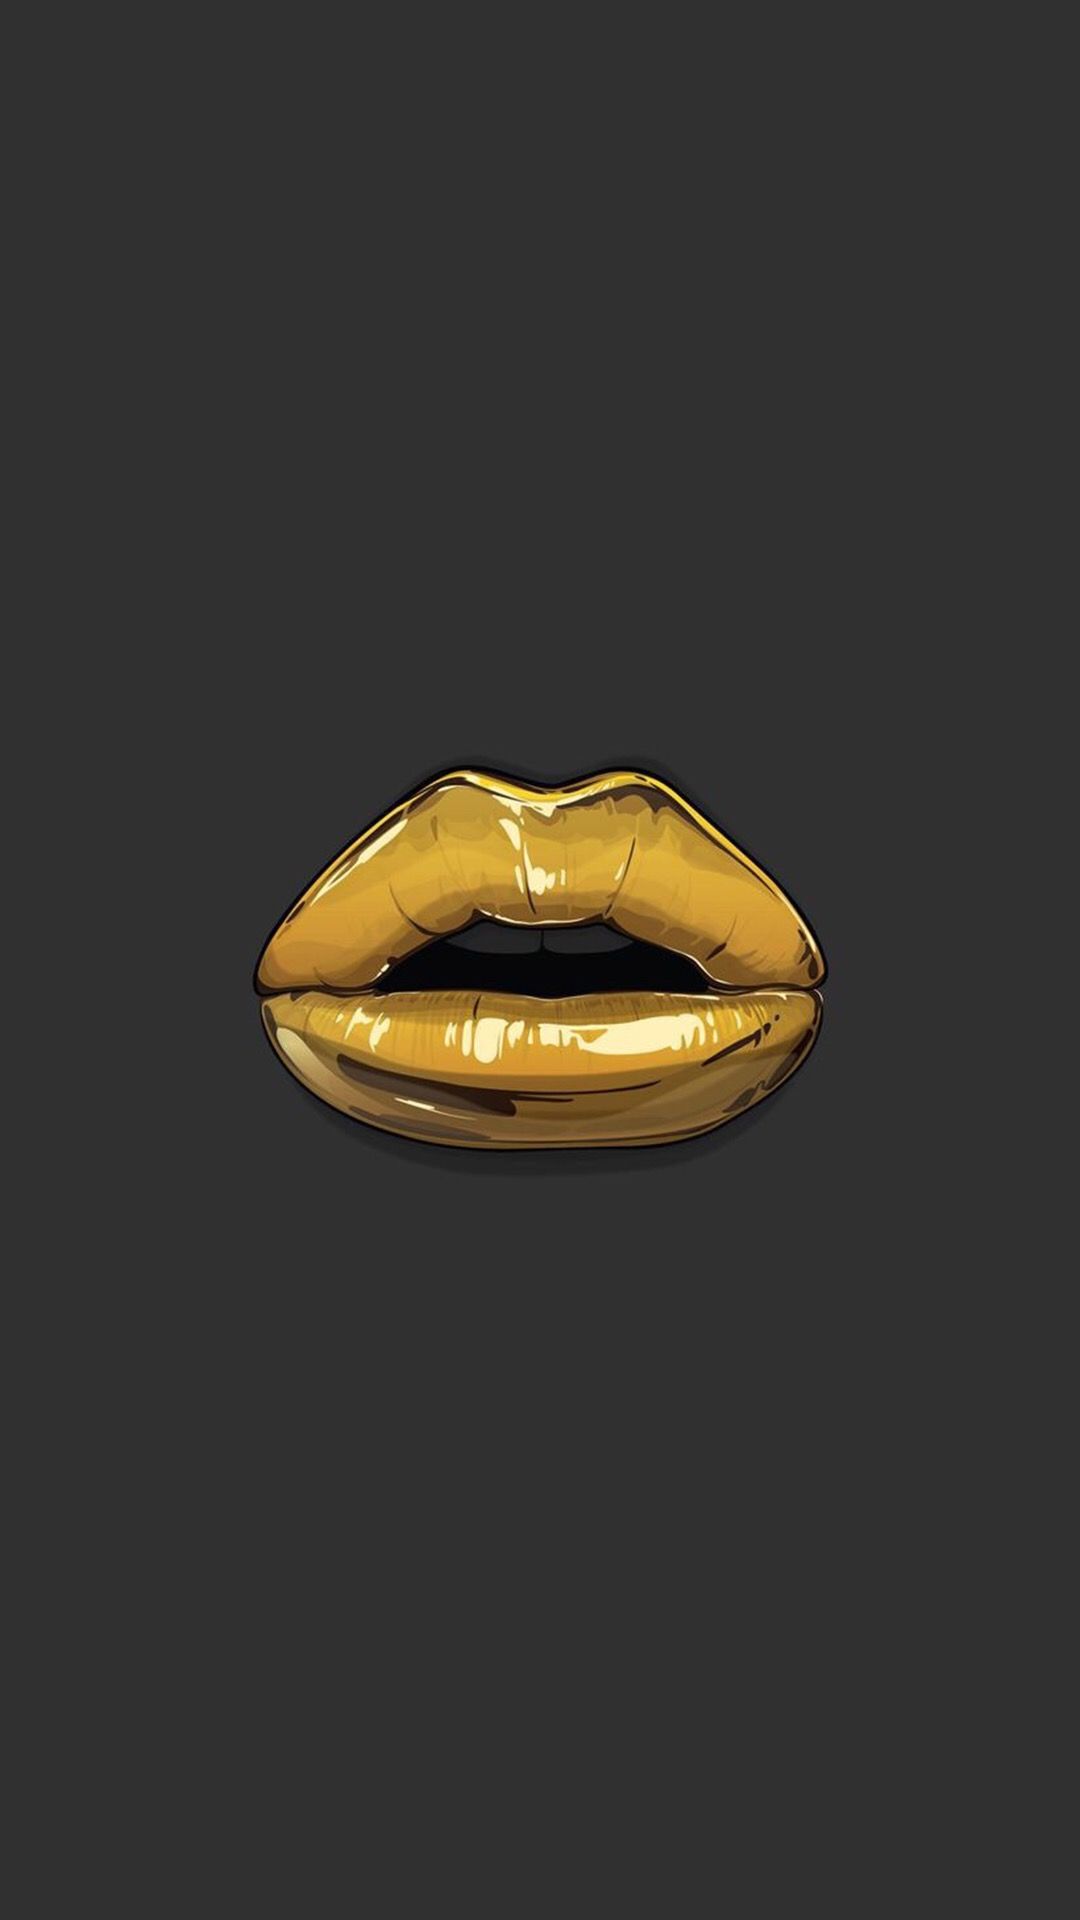 Teresa Polnaszek On Black And White Gold Lips Wallpaper